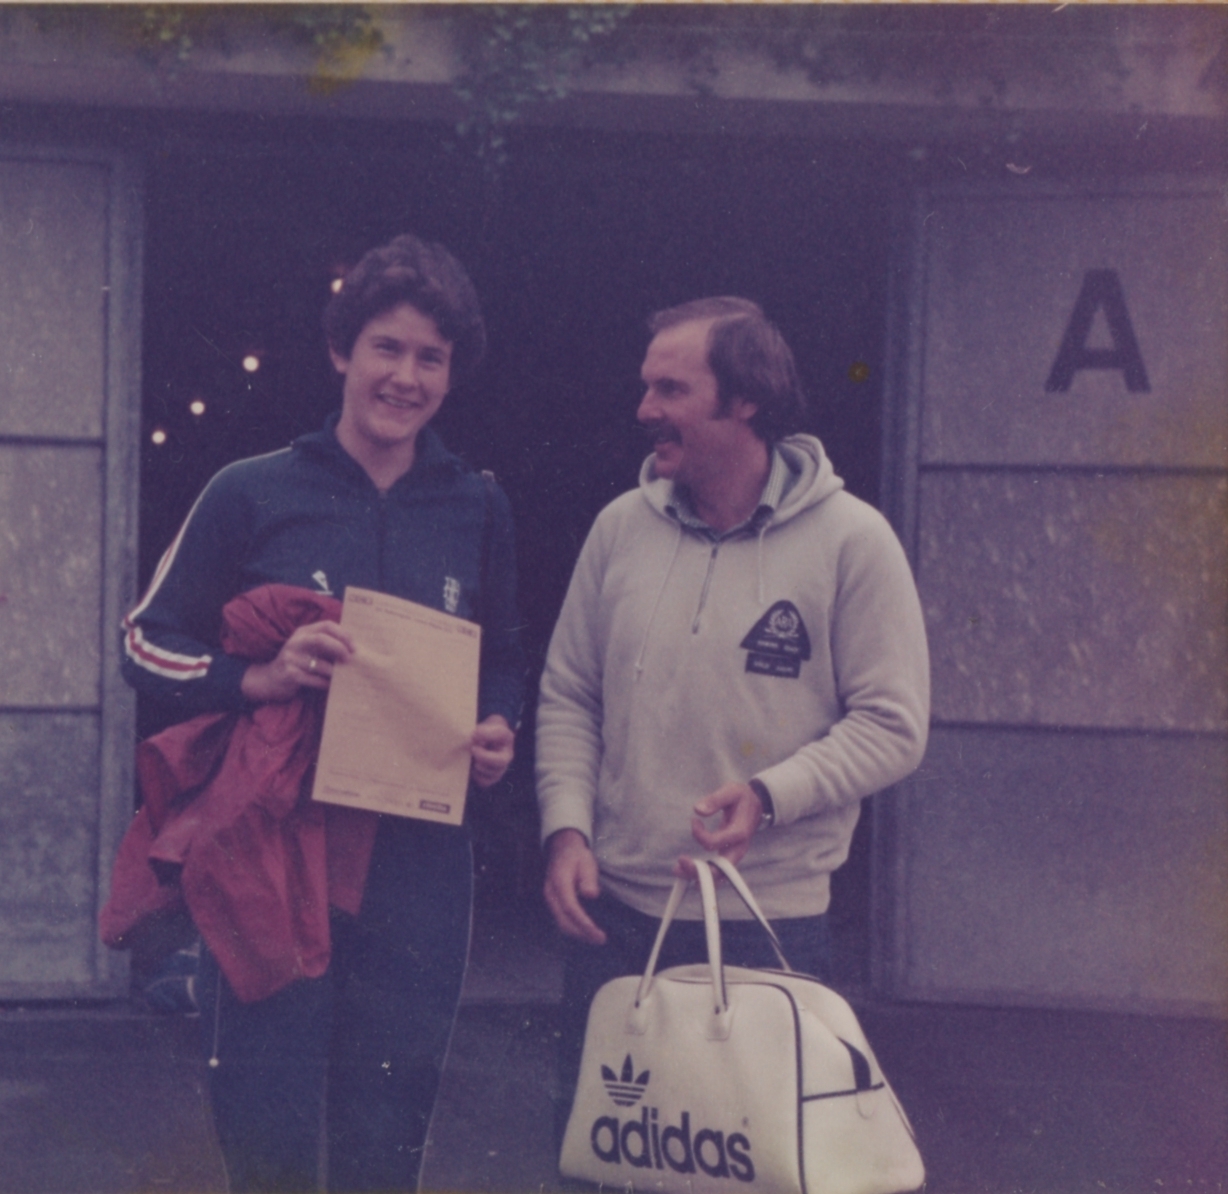 1978 Liz and Martin Pratt at Lucerne